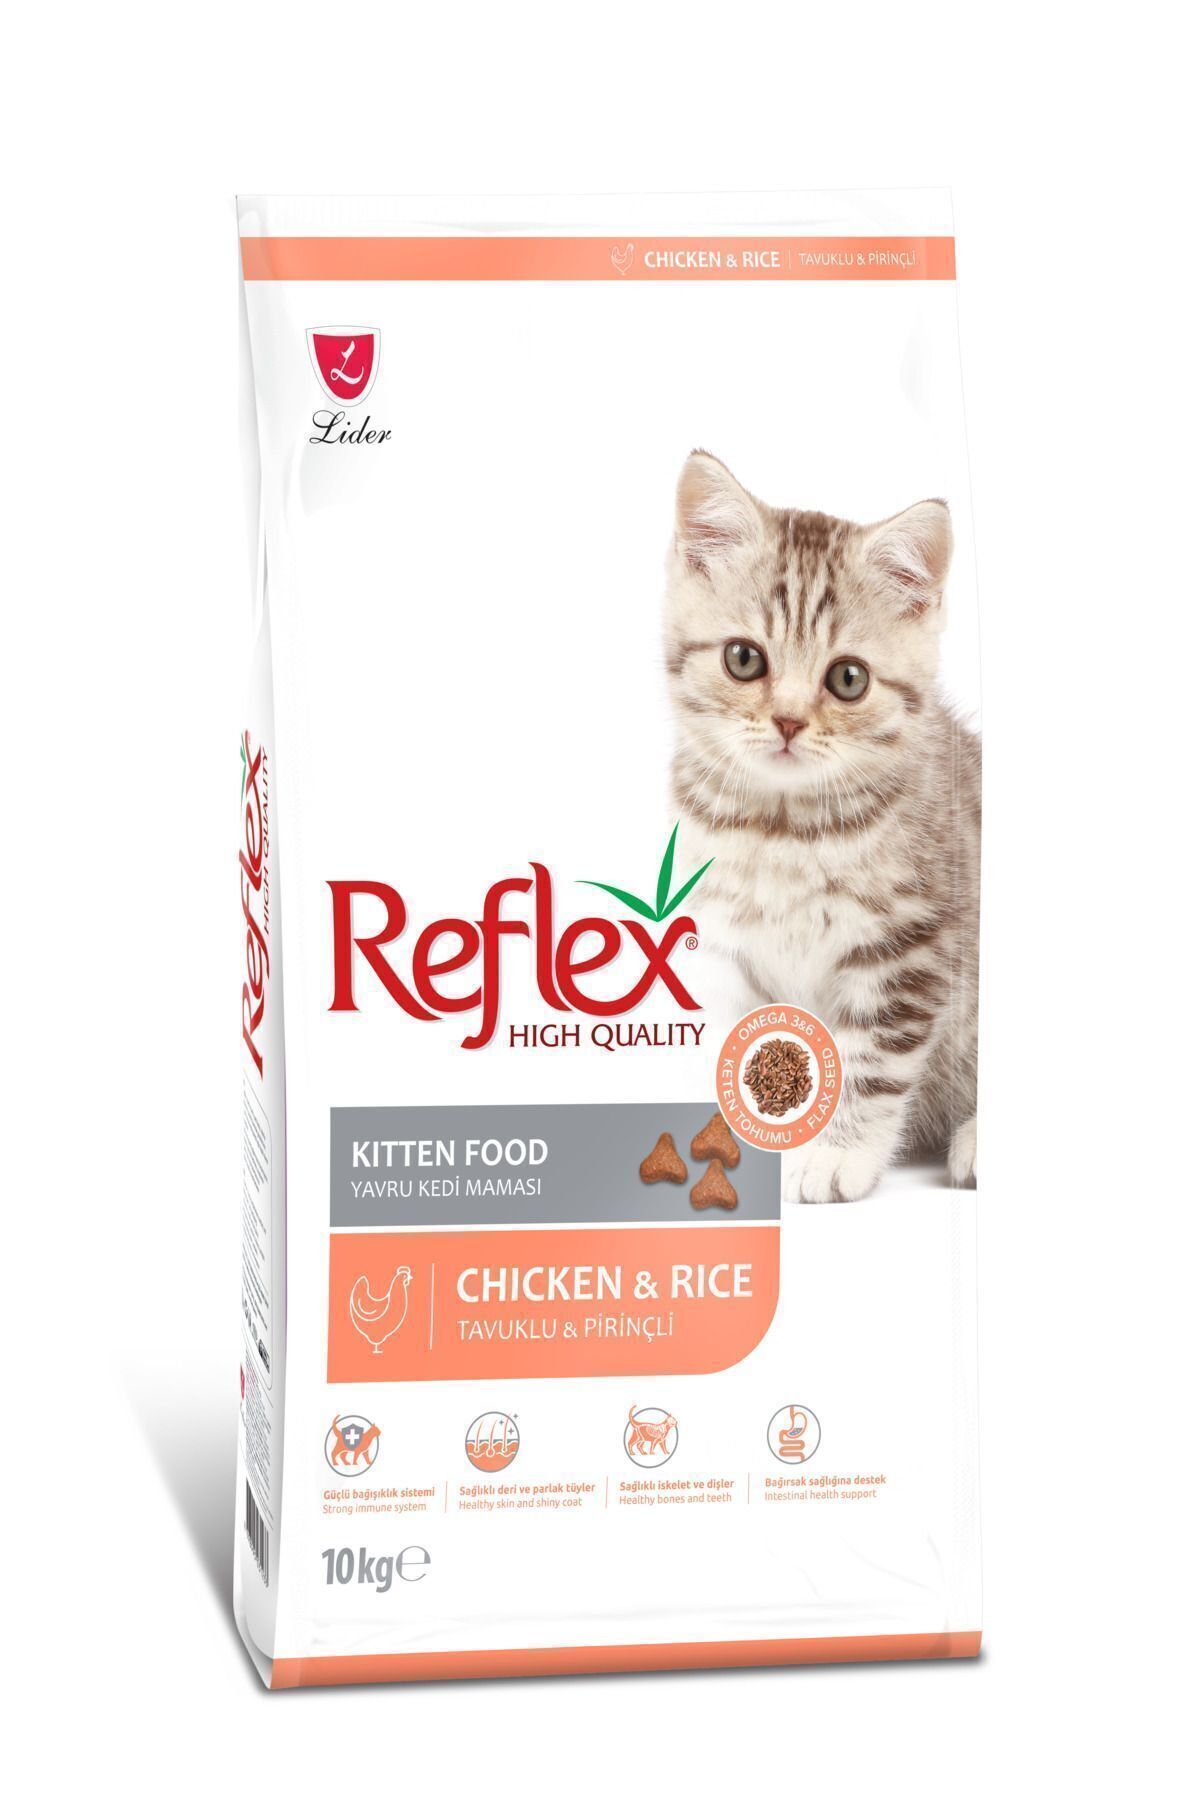 Reflex Kıtten Chıcken & Rıce Cat Food 10 Kg